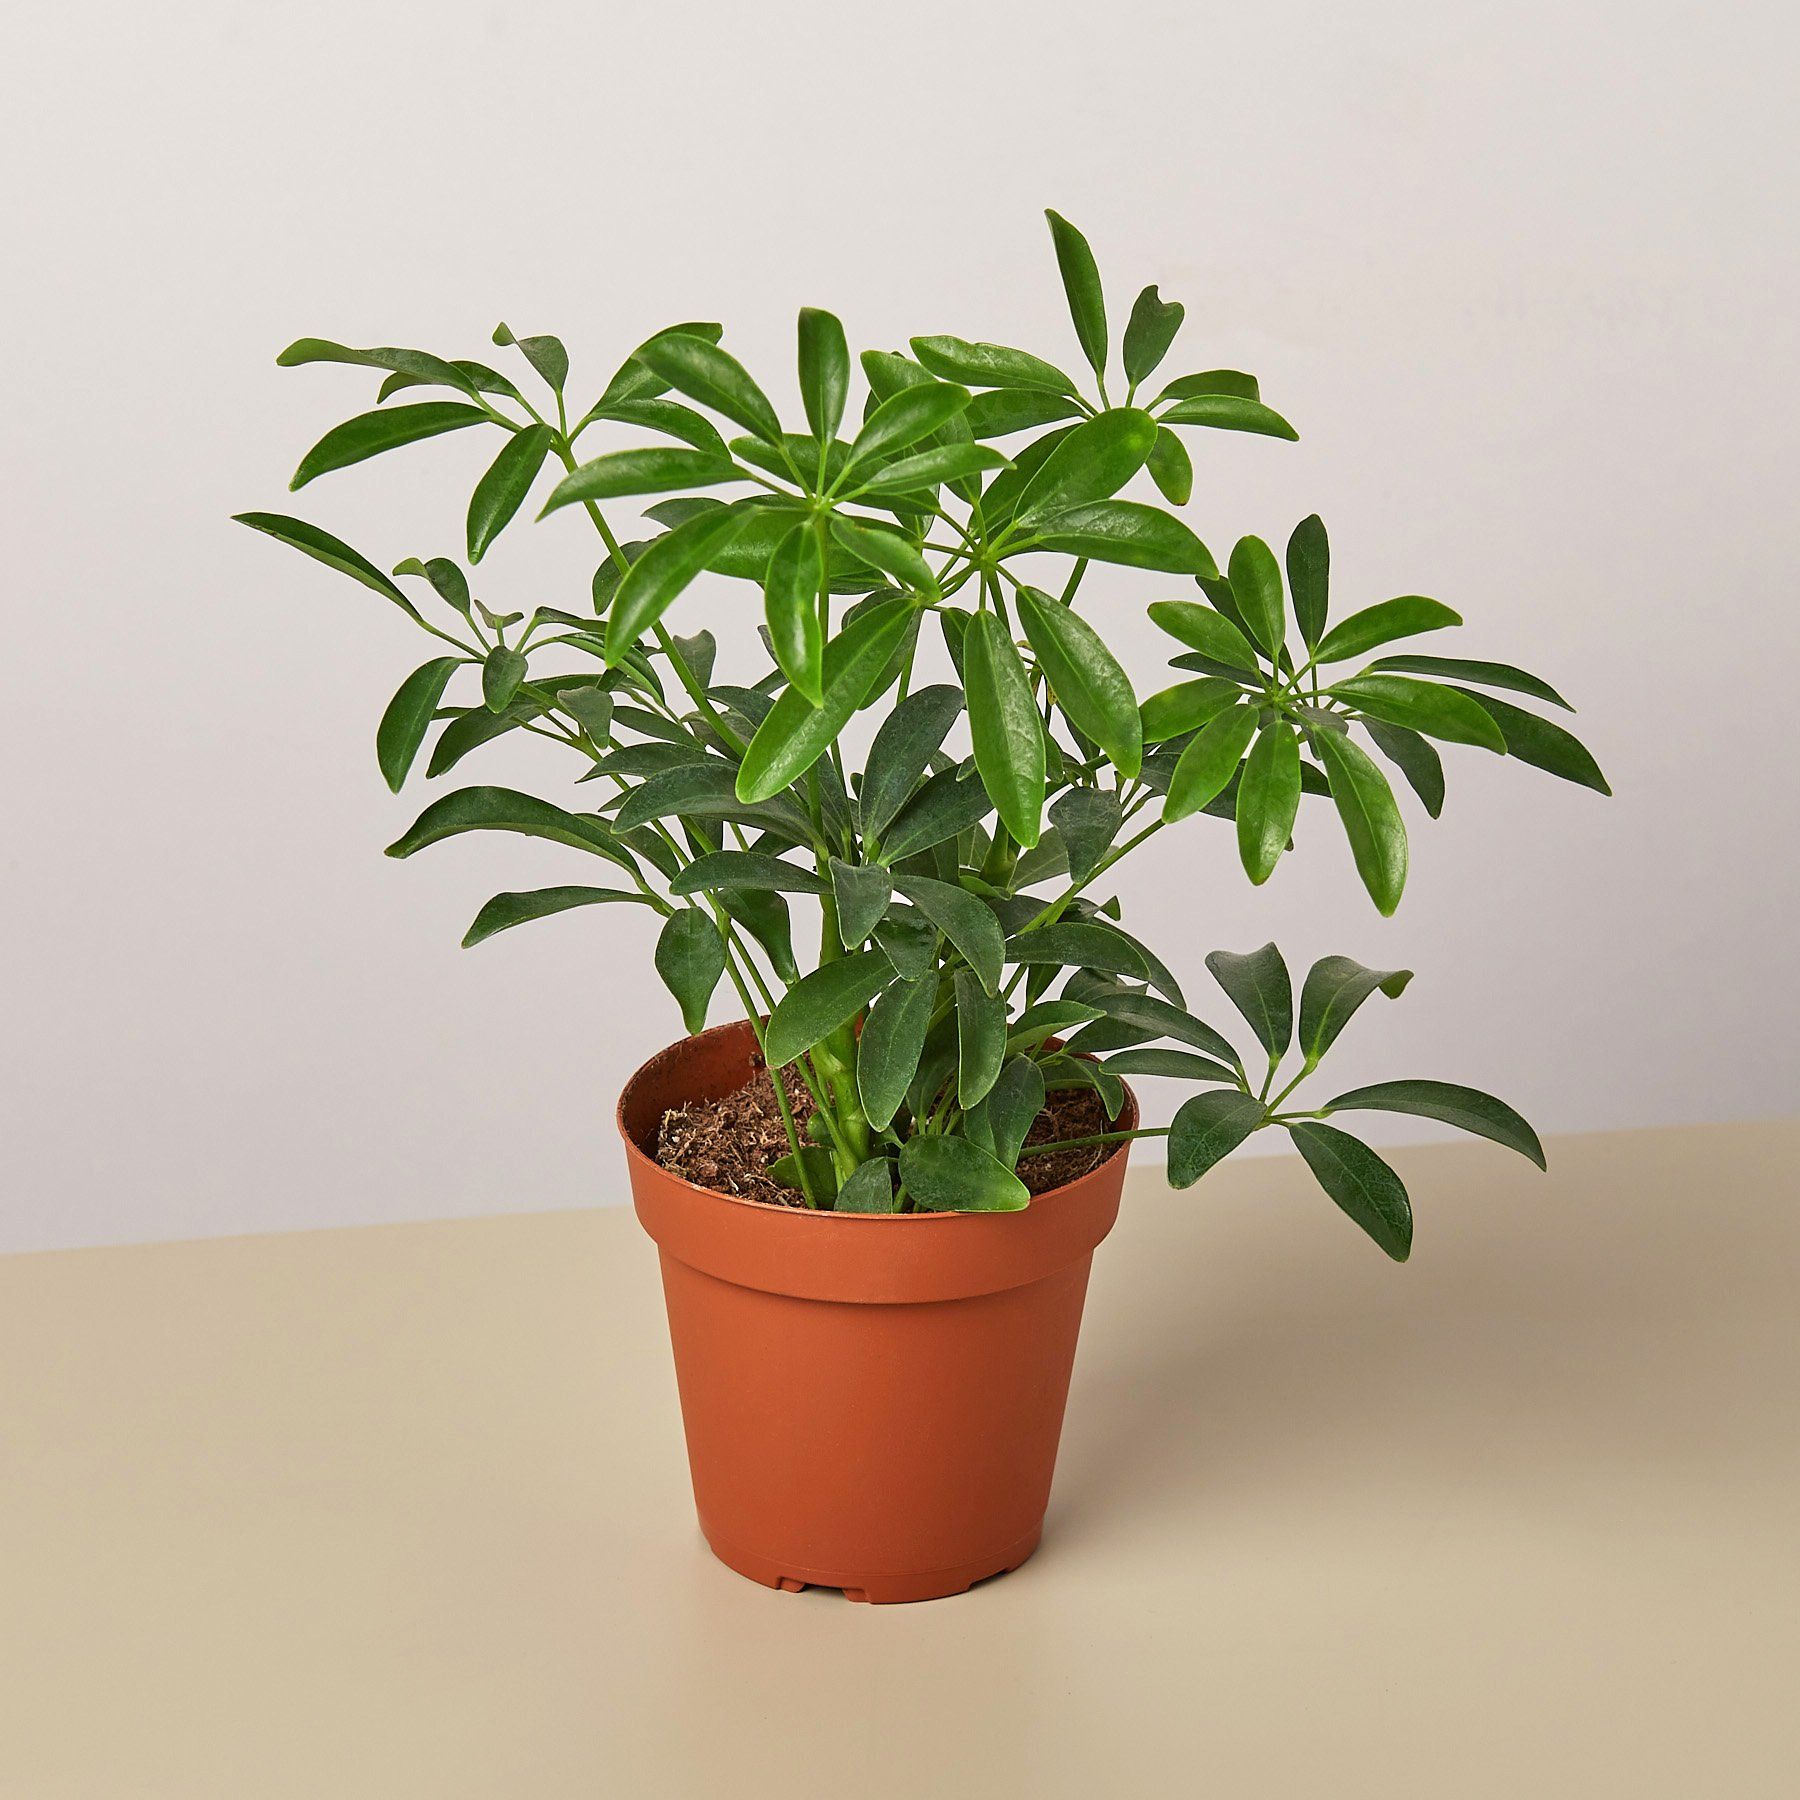 Easy indoor plants uk